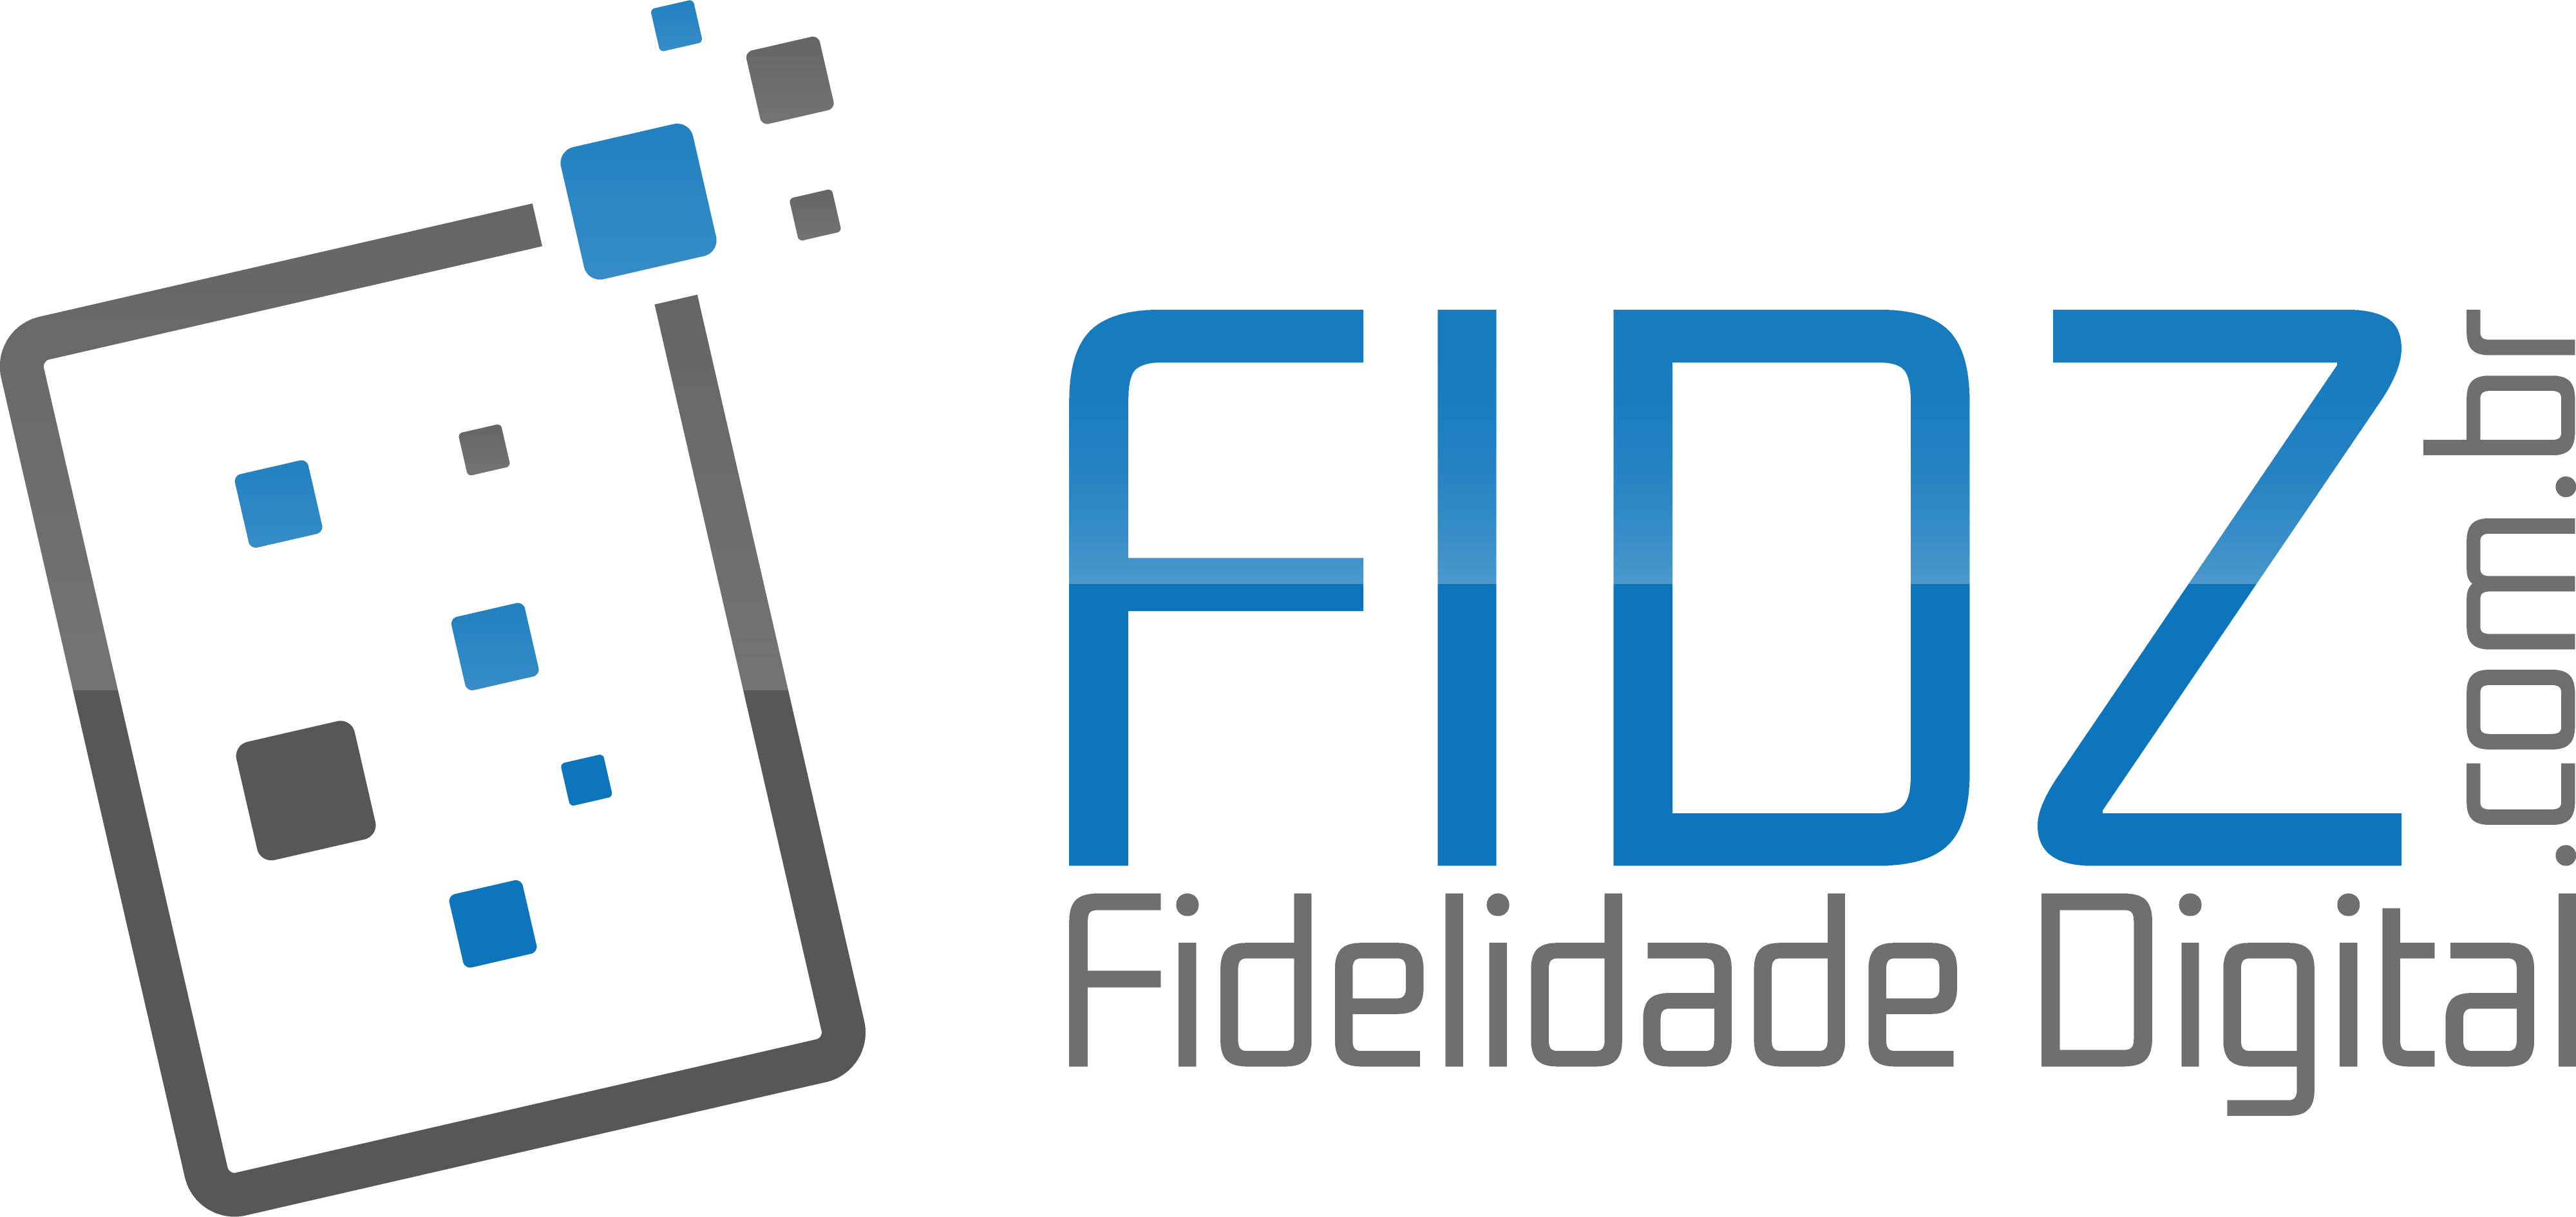 Fidz logo dcf29d51fec8d91175954acf024b2bd1c65438495ab5073dec2e578929e1d416